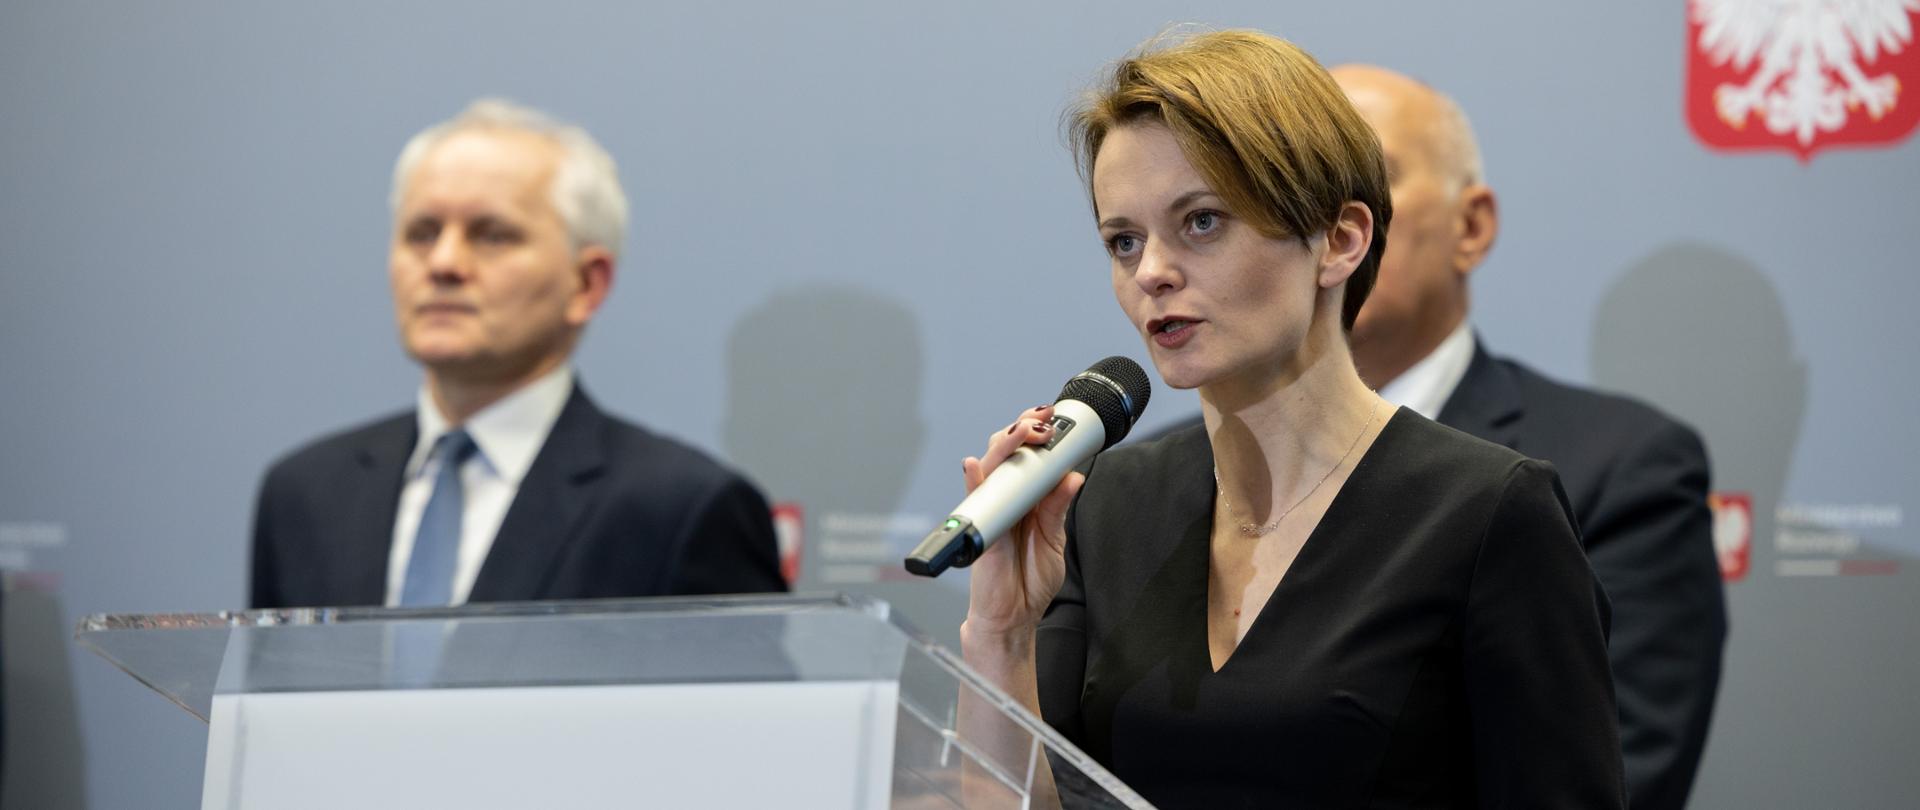 Jadwiga Emilewicz podczas konferencji prasowej